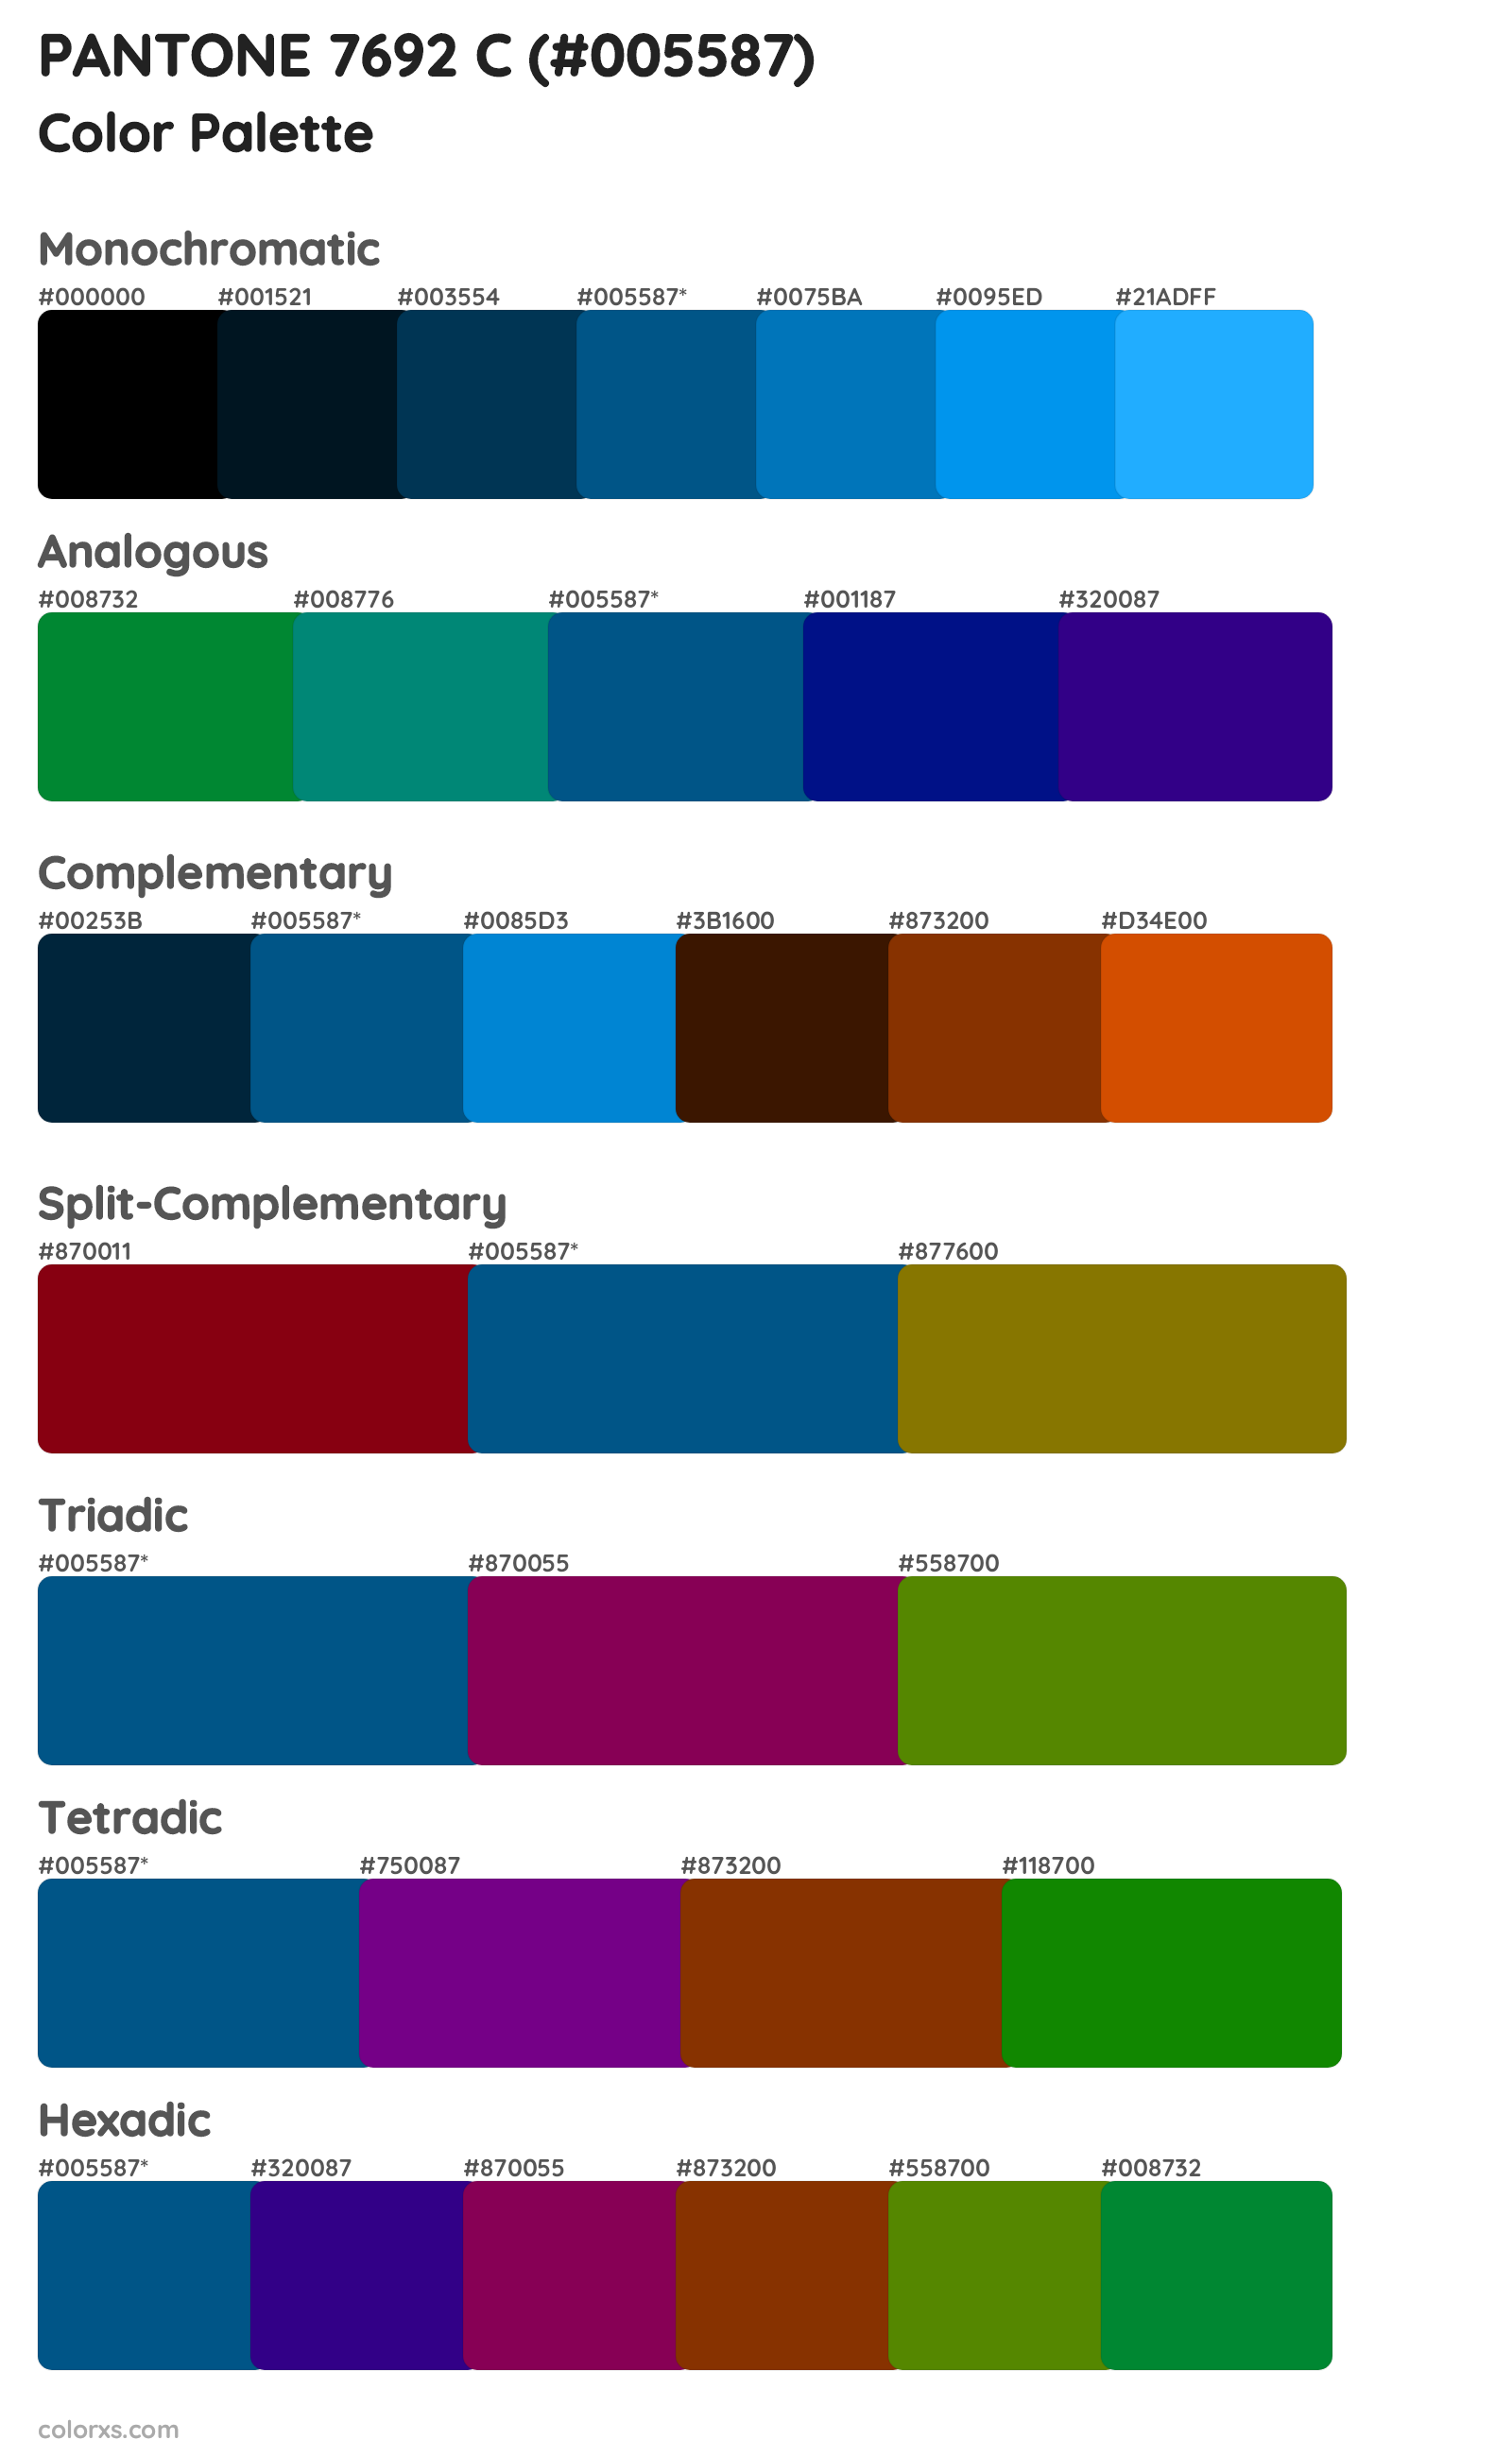 PANTONE 7692 C Color Scheme Palettes